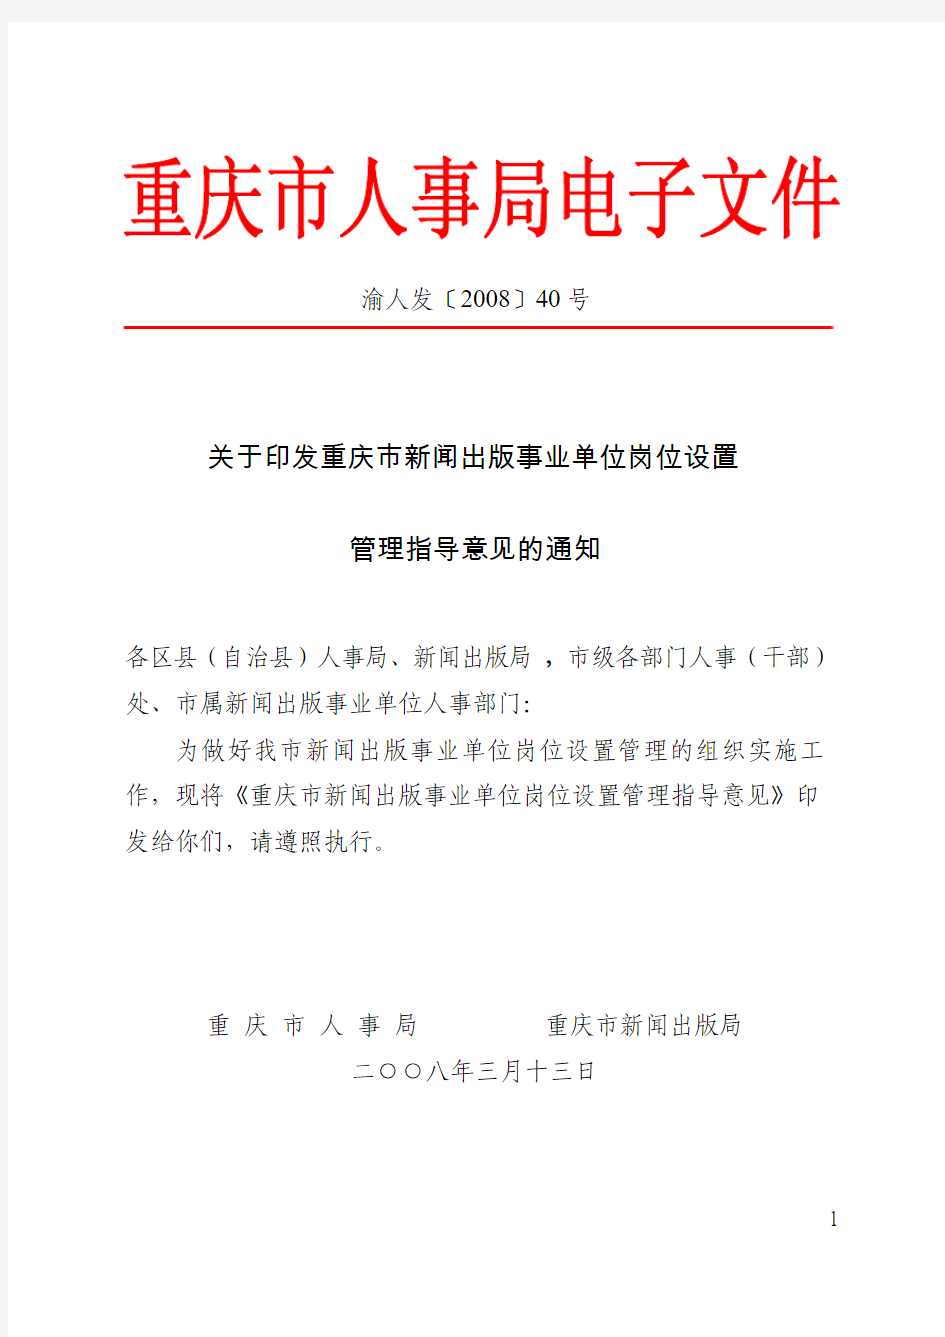 渝人发〔2008〕40号关于印发重庆市新闻出版事业单位岗位设置管理指导意见的通知